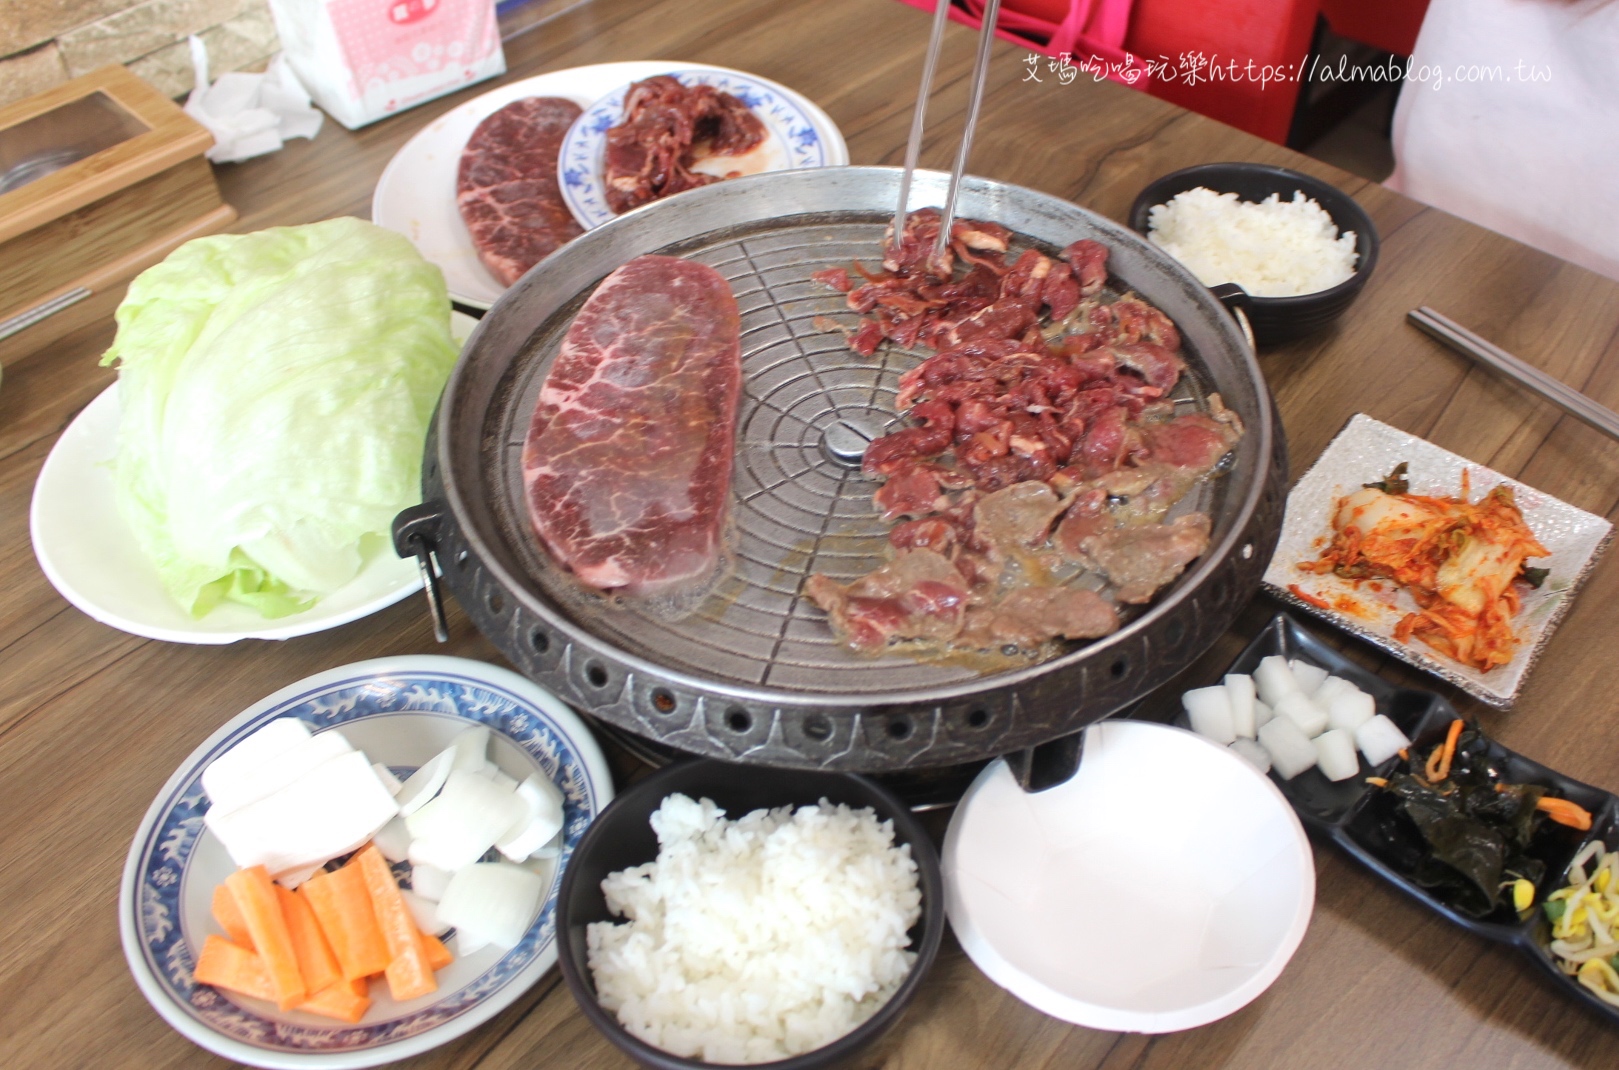 炸醬麵,韓國小菜,韓國館,韓式料理,韓式烤肉